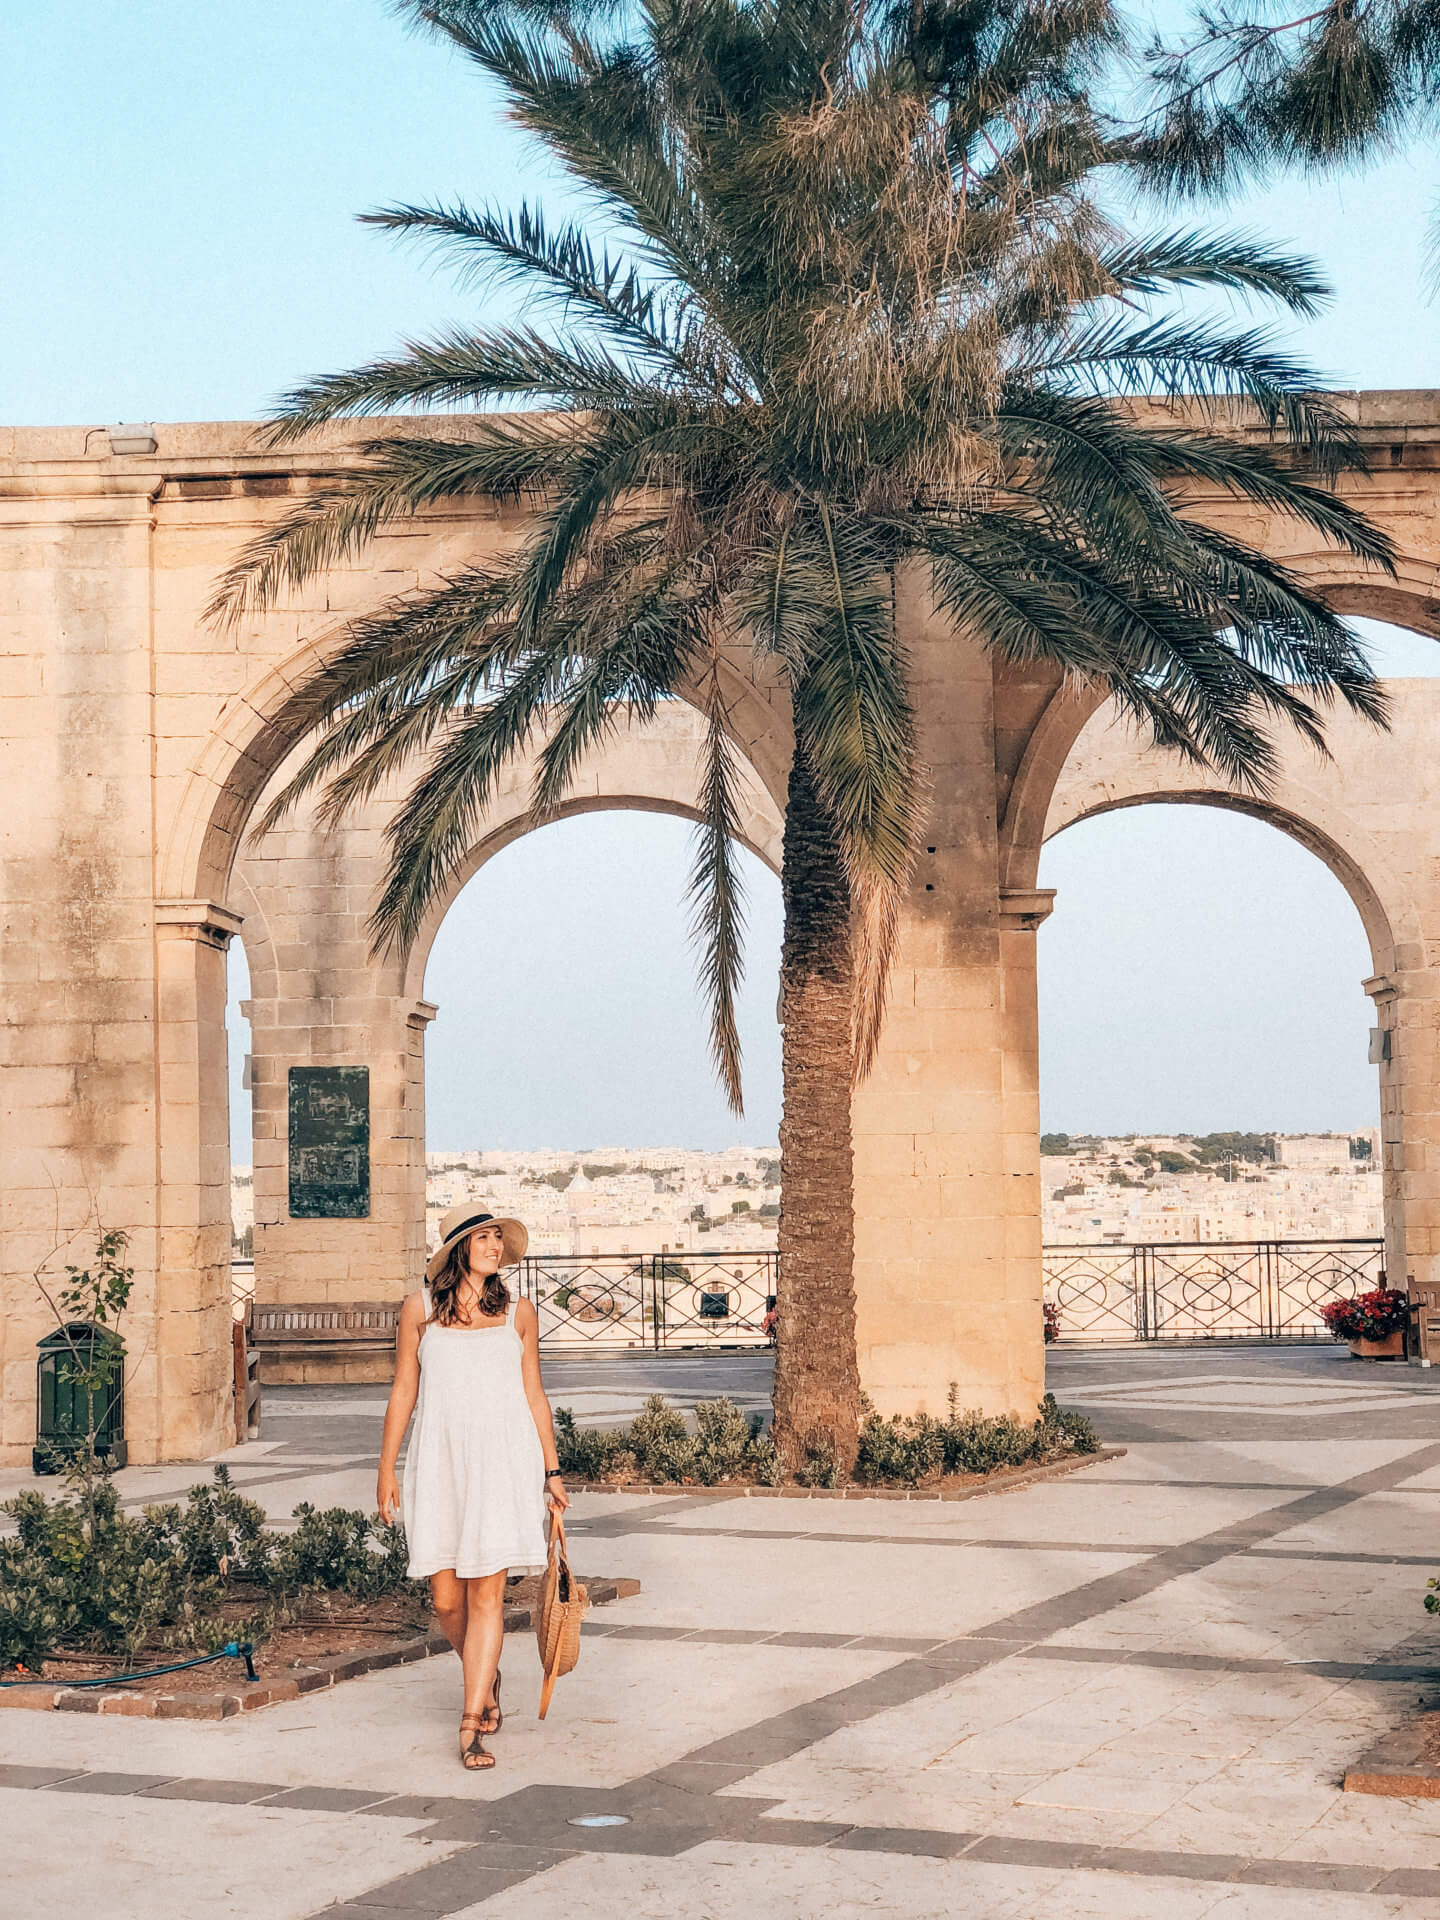 The Ultimate Malta Travel Guide: “Europe's Best Kept Secret”